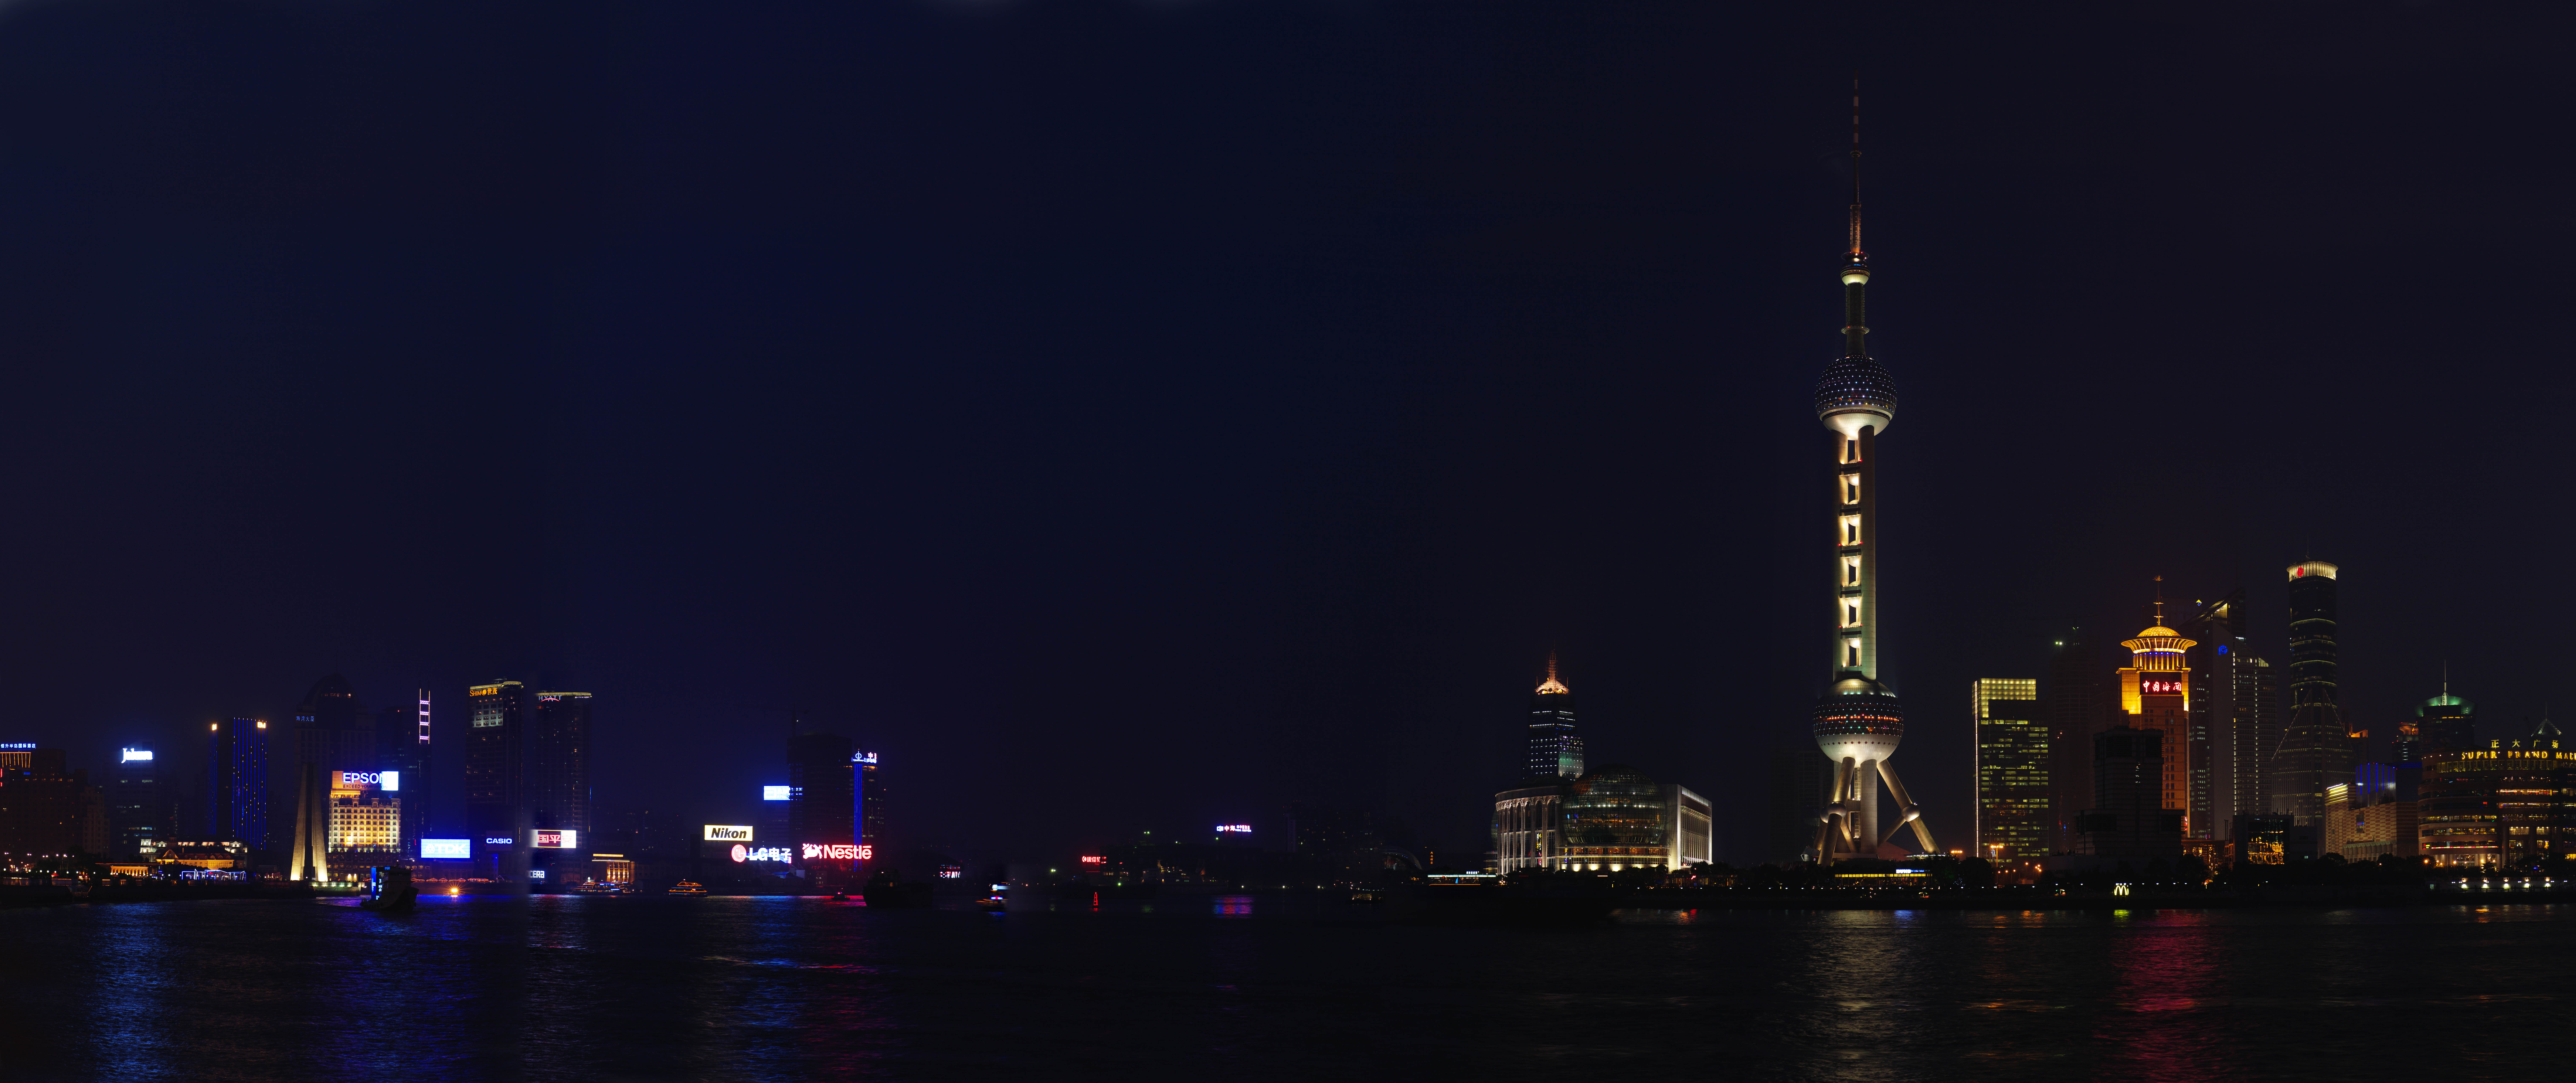 Foto, materiell, befreit, Landschaft, Bild, hat Foto auf Lager,Eine Nacht von Sicht von Huangpu Jiang, Ost-leichter Ballturm, Ich beleuchte es, Illuminierung, Schiff